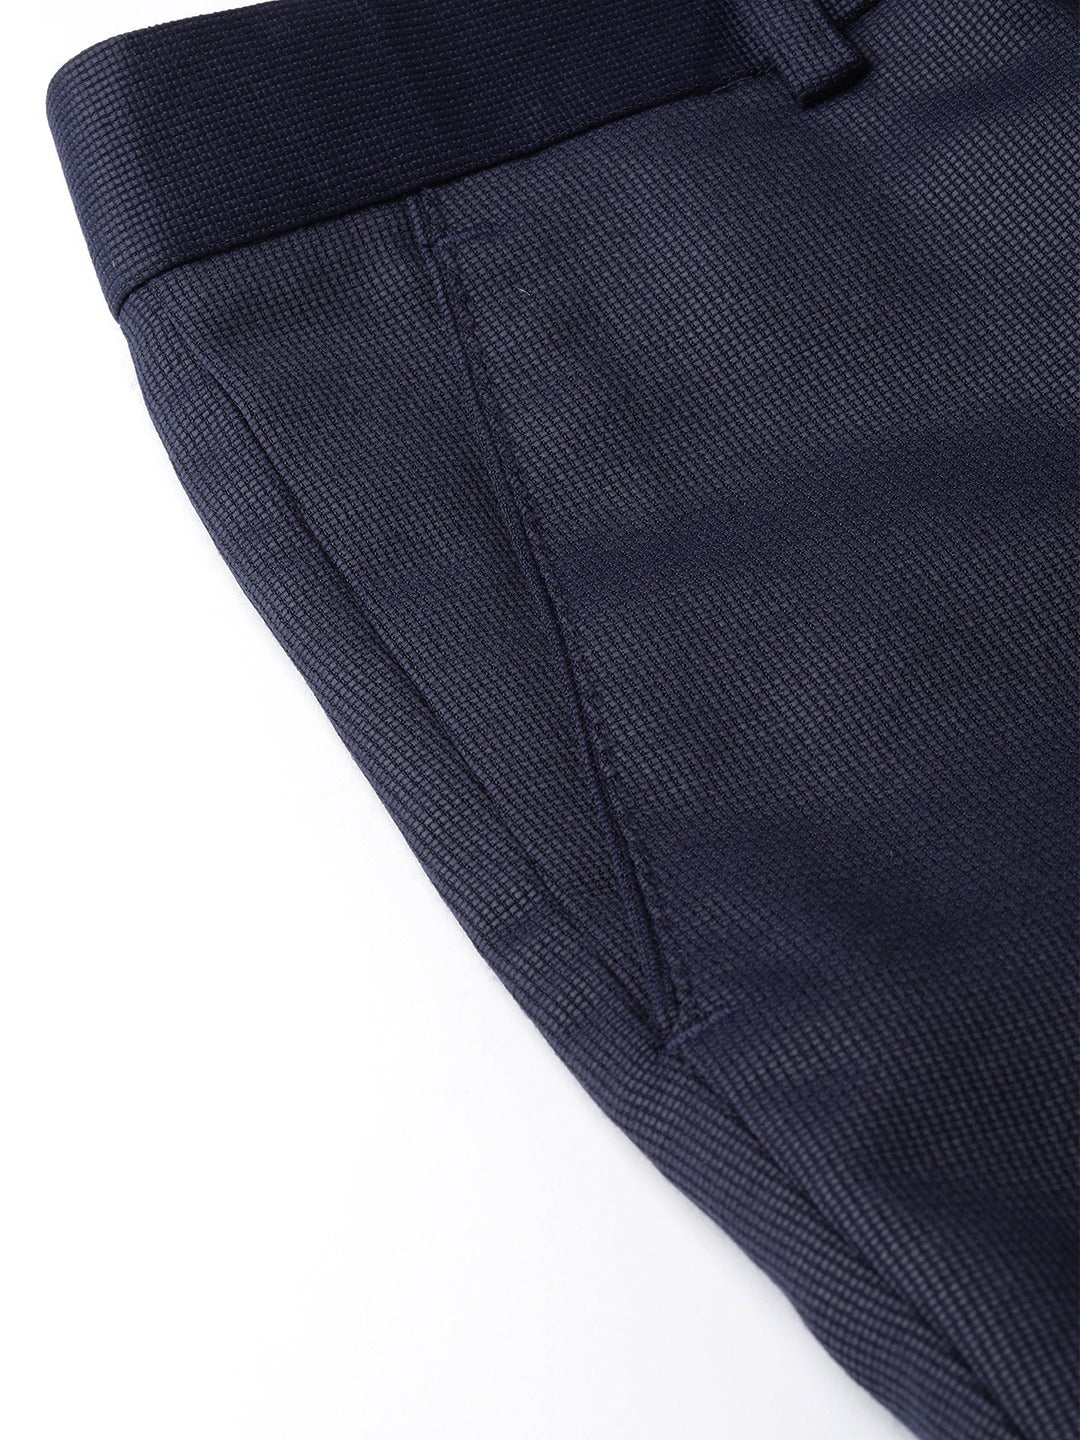 Men's Suit Pants & Slacks for Men | Hawes & Curtis